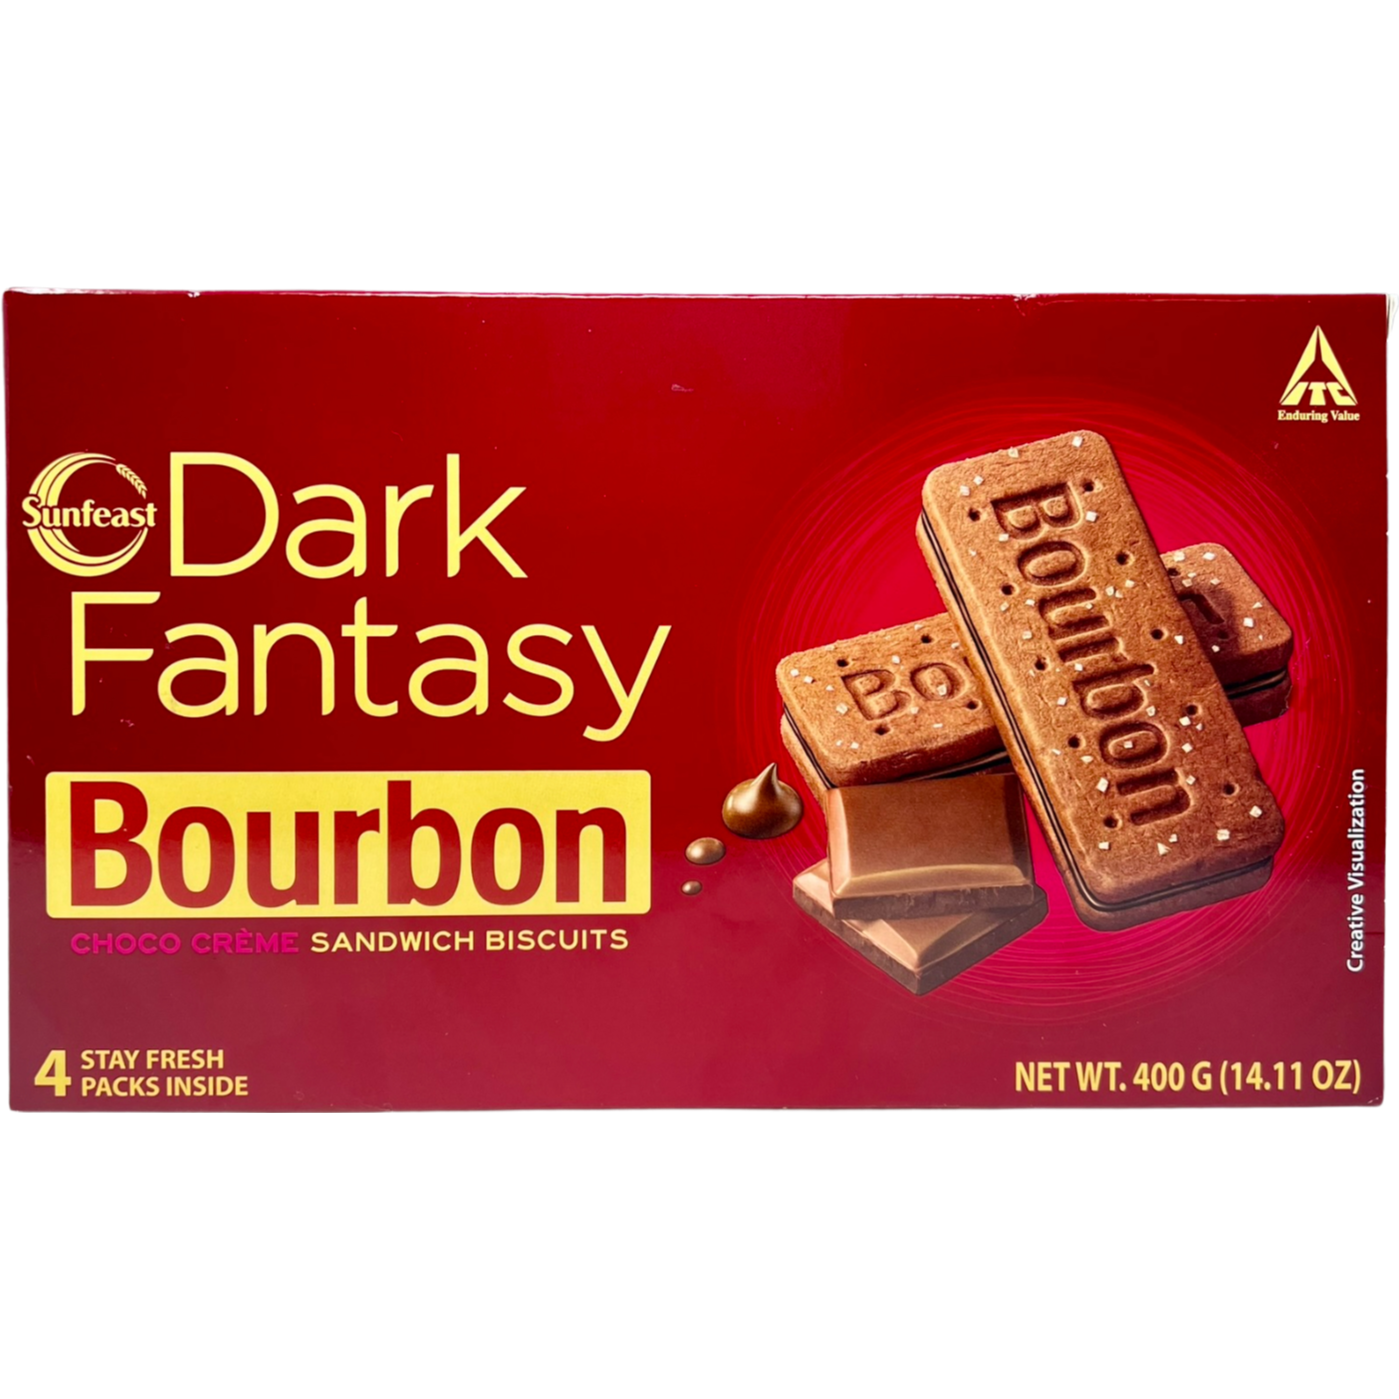 Sunfeast Dark Fantasy Bourbon Biscuits - 400 Gm (14.1 Oz)